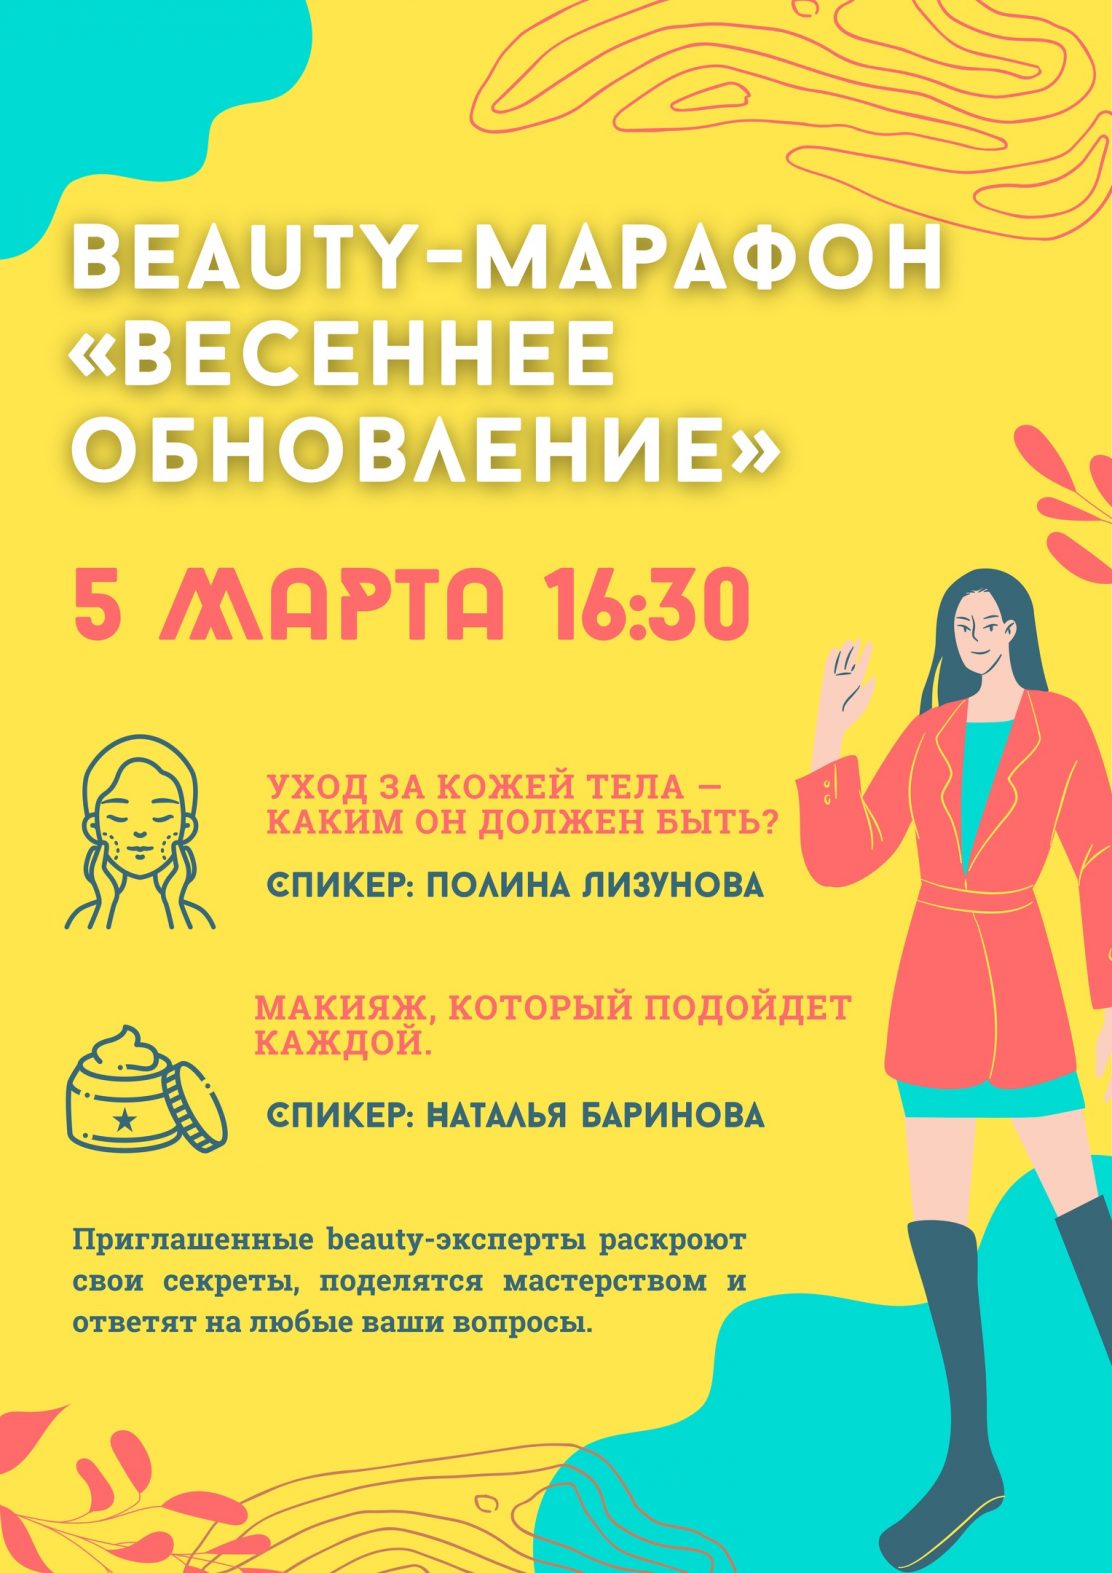 Beauty-марафон "Весеннее обновление" в EX LIBRIS